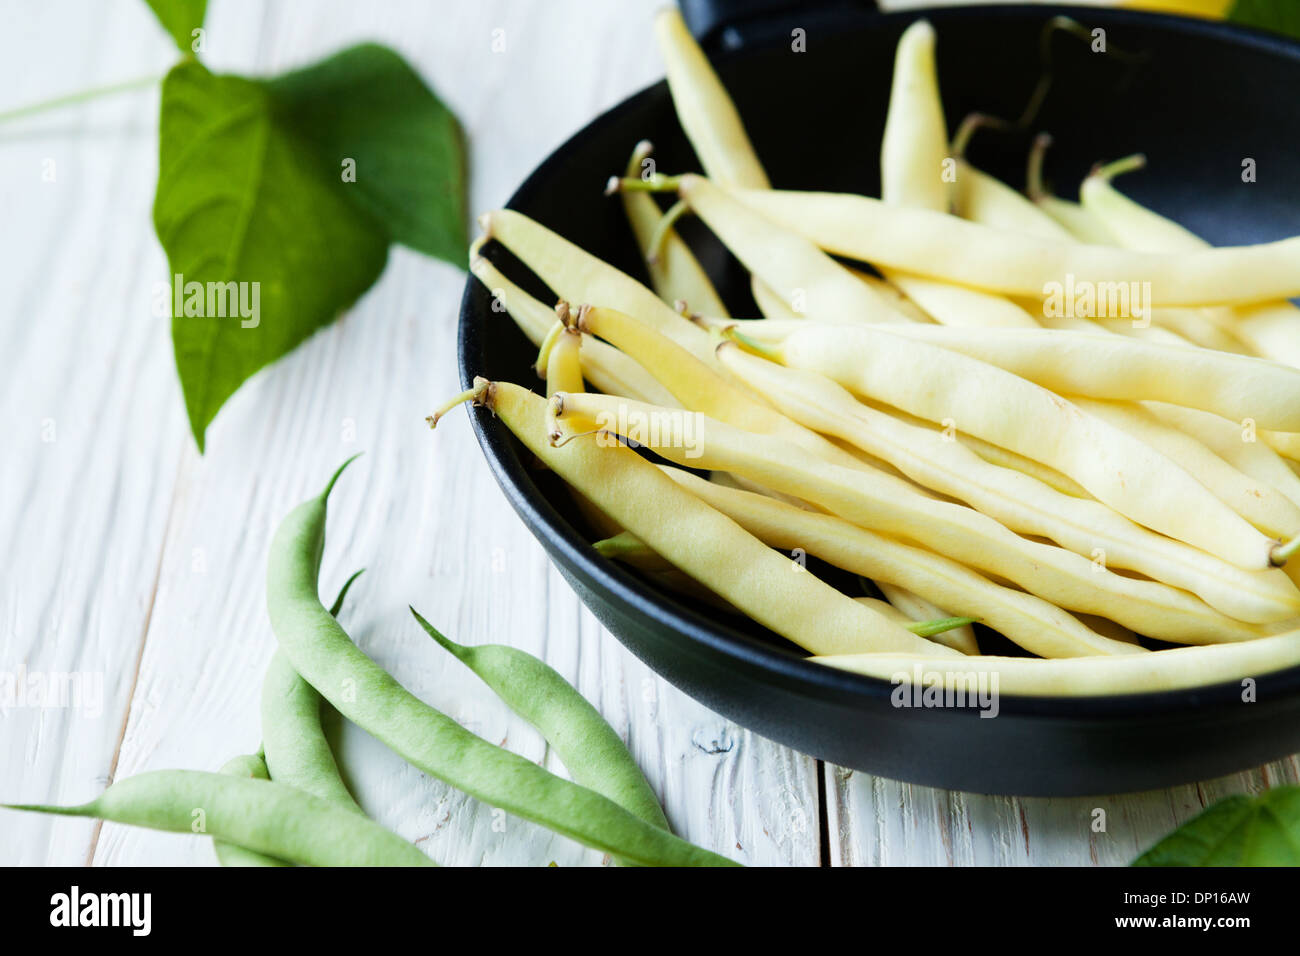 Les haricots verts dans une casserole, de l'alimentation libre Banque D'Images